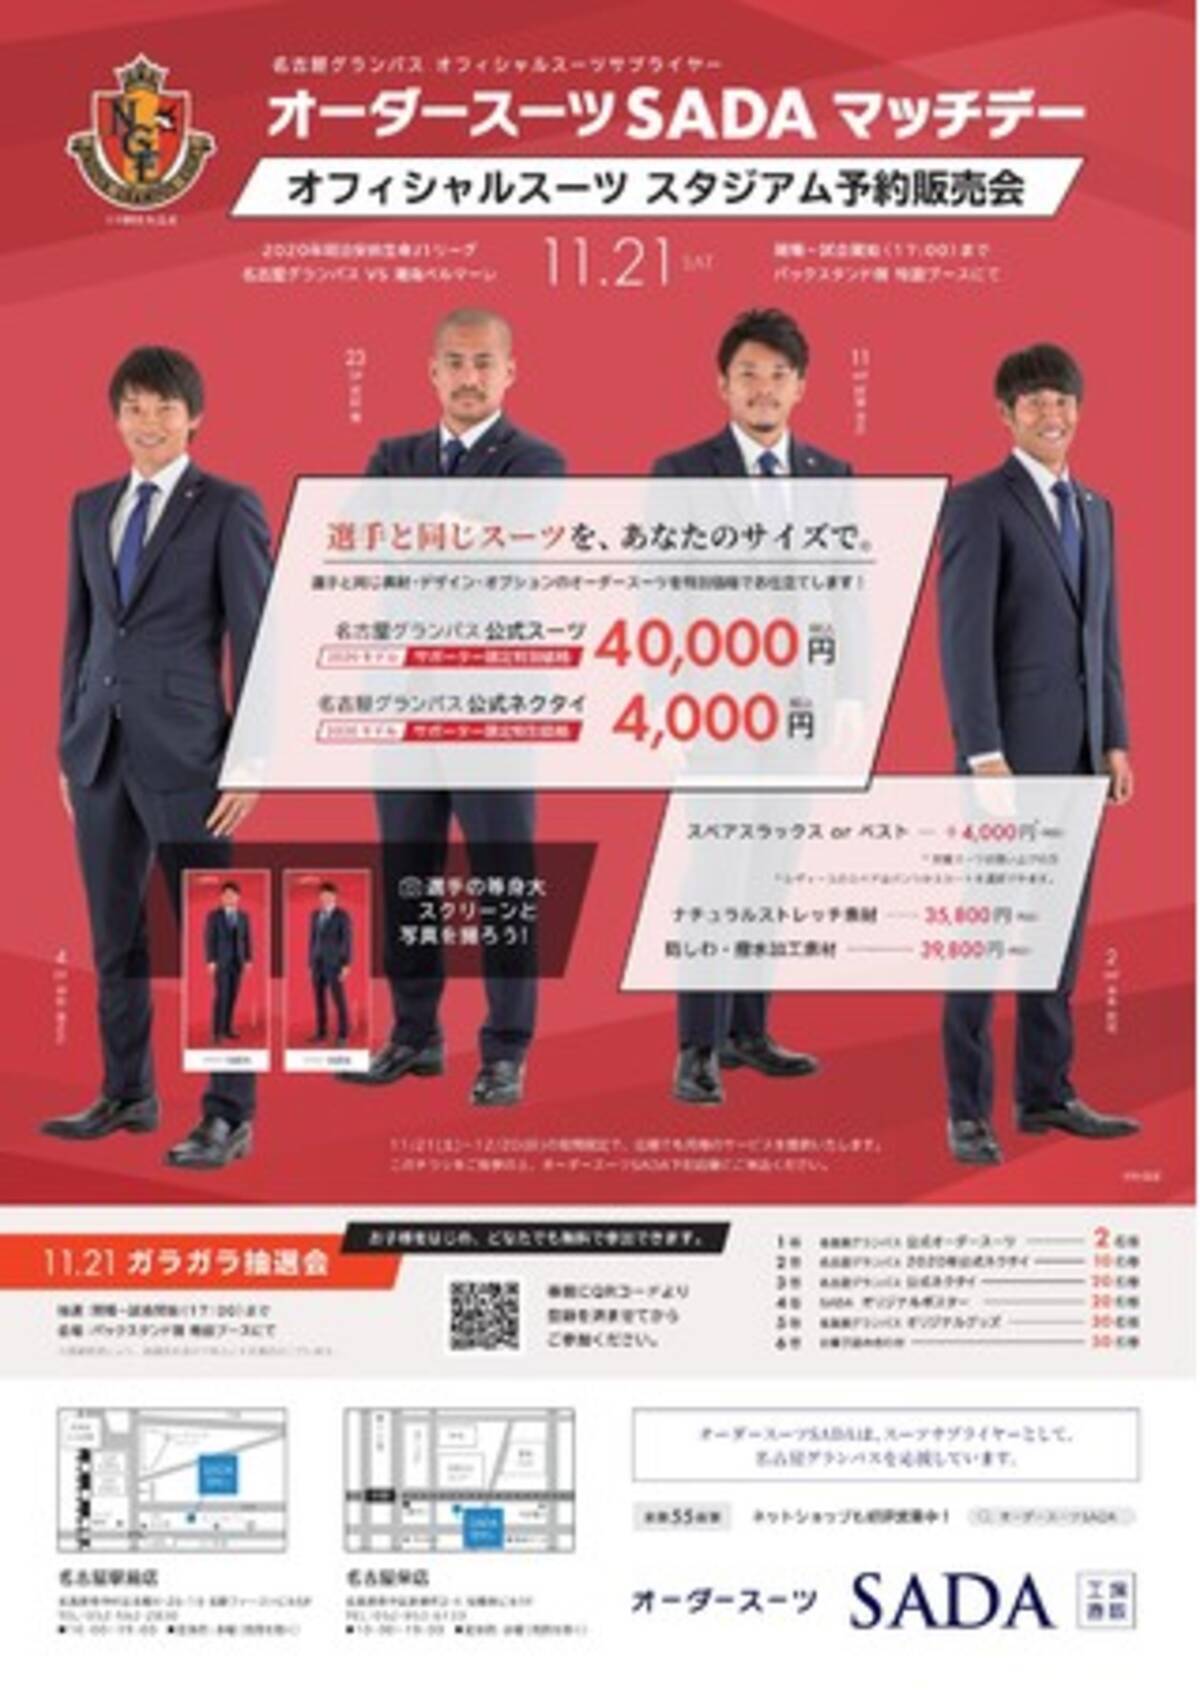 名古屋グランパス 11 21 土 オーダースーツsadaマッチデー開催 試合前にはオフィシャルスーツのスタジアム予約販売会をおこないます 年11月10日 エキサイトニュース